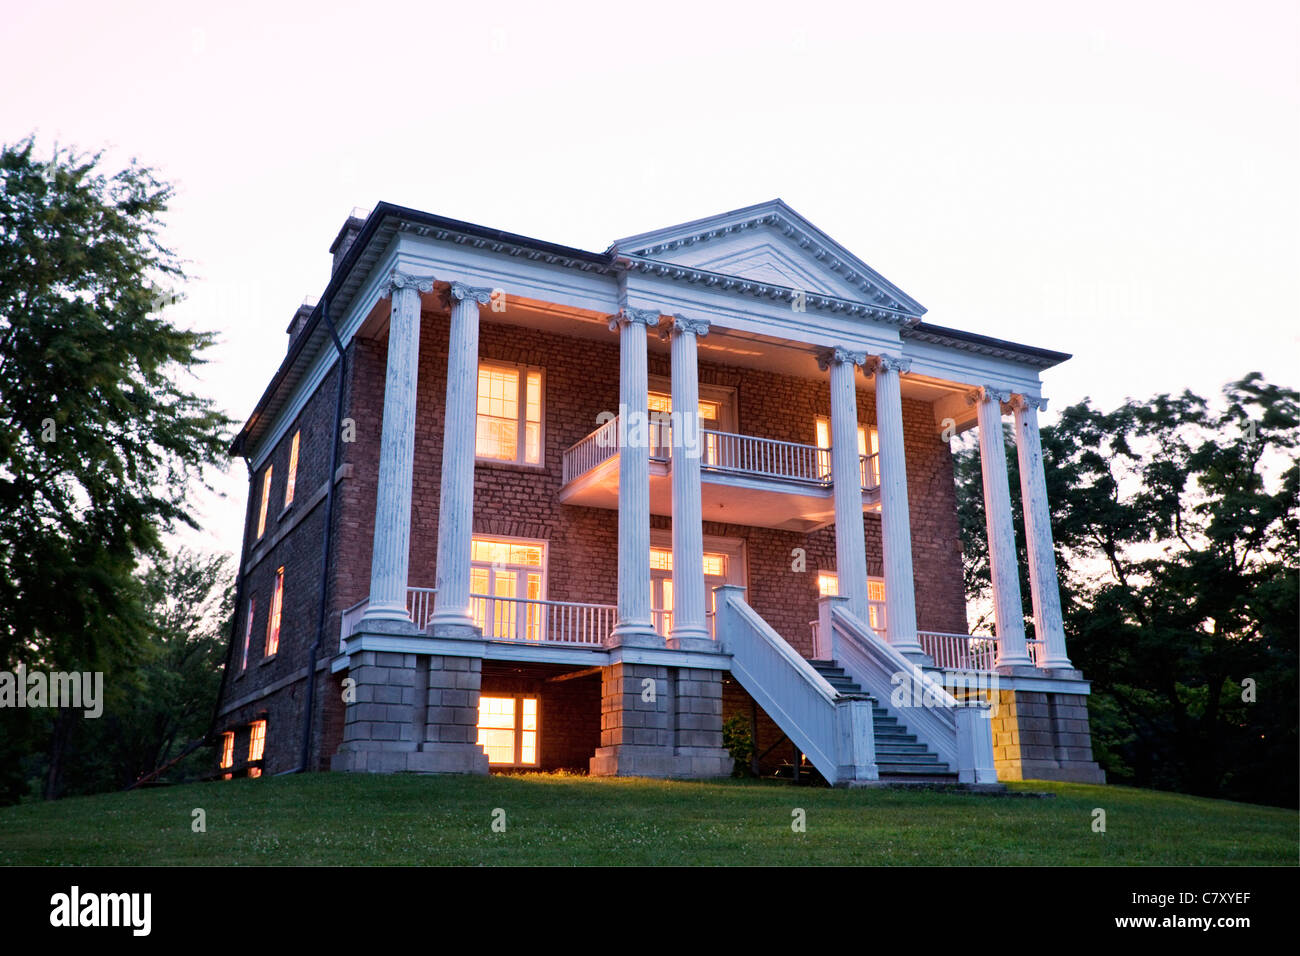 Canada, Ontario, Queenston, Willowbank est une maison de renouveau grecque construite en 1834 et est un lieu historique national au Canada. École de restauration Banque D'Images